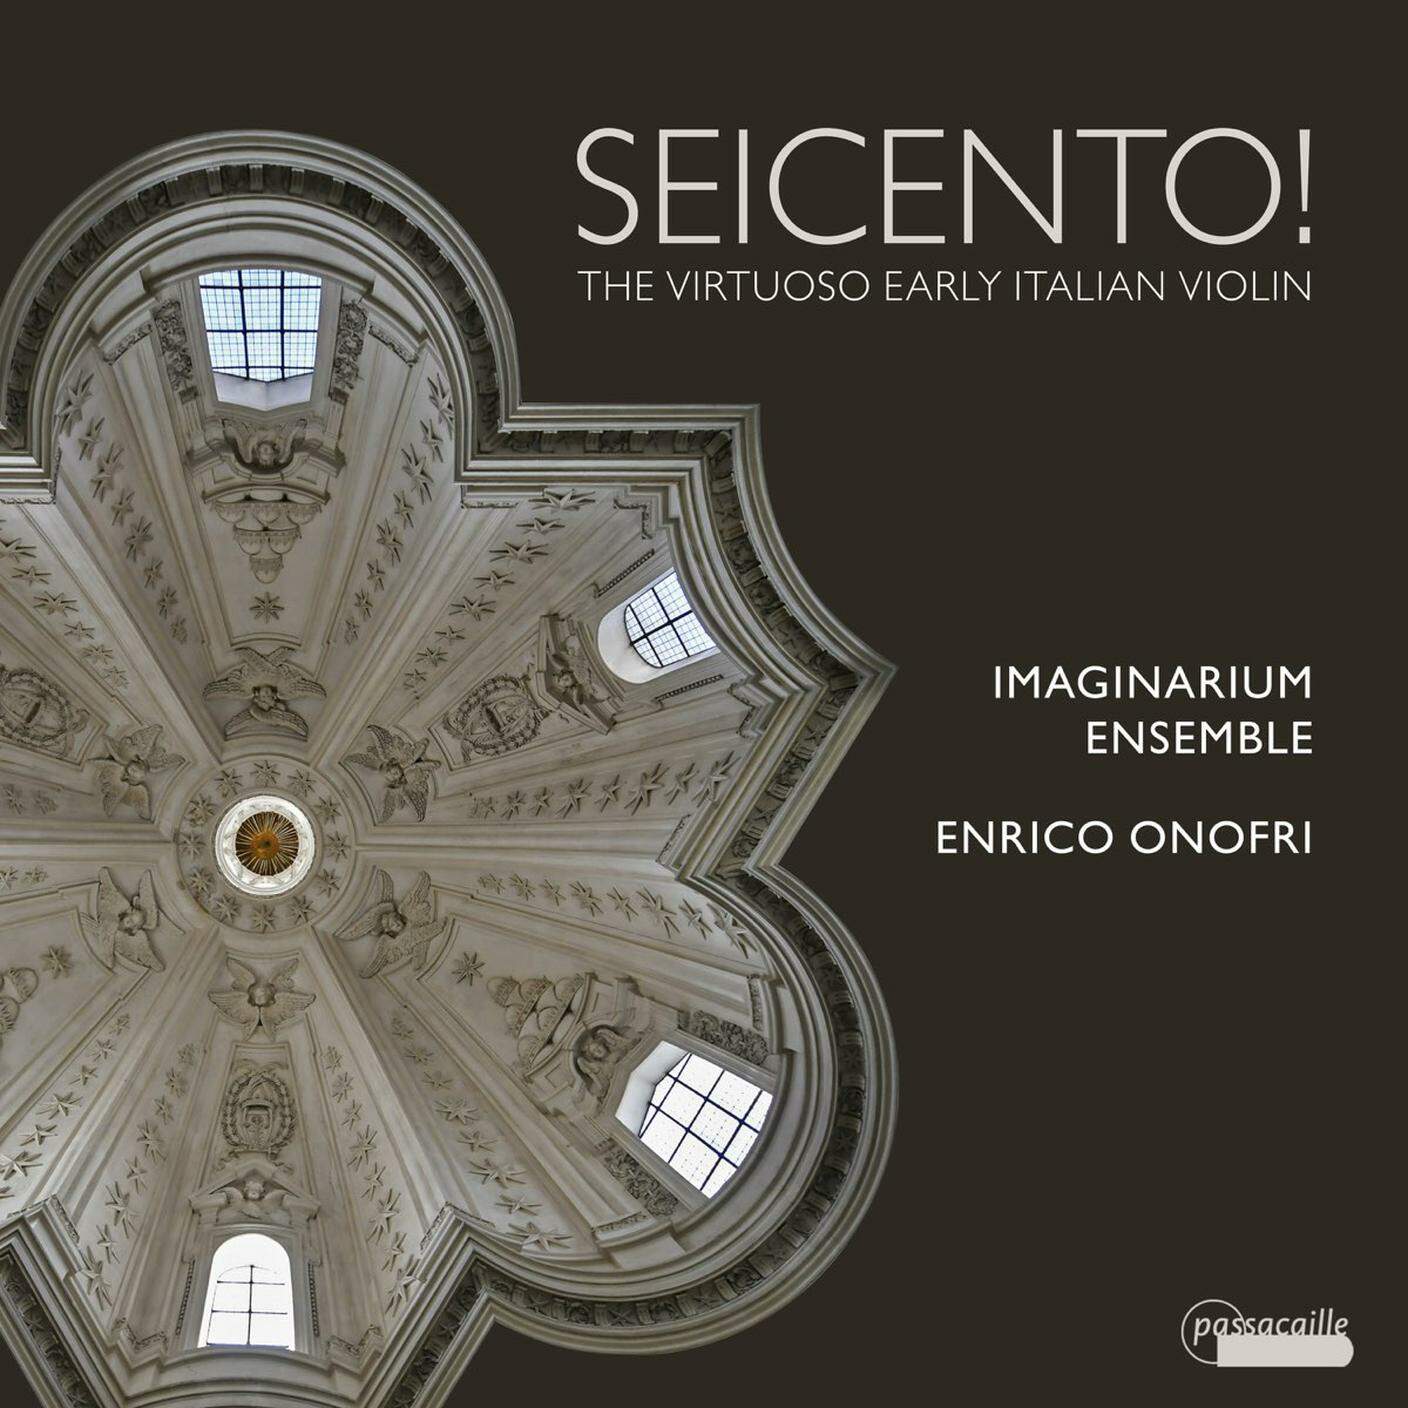 "Seicento!" di Enrico Onofri & Imaginarium Ensemble, Passacaille (dettaglio di copertina)